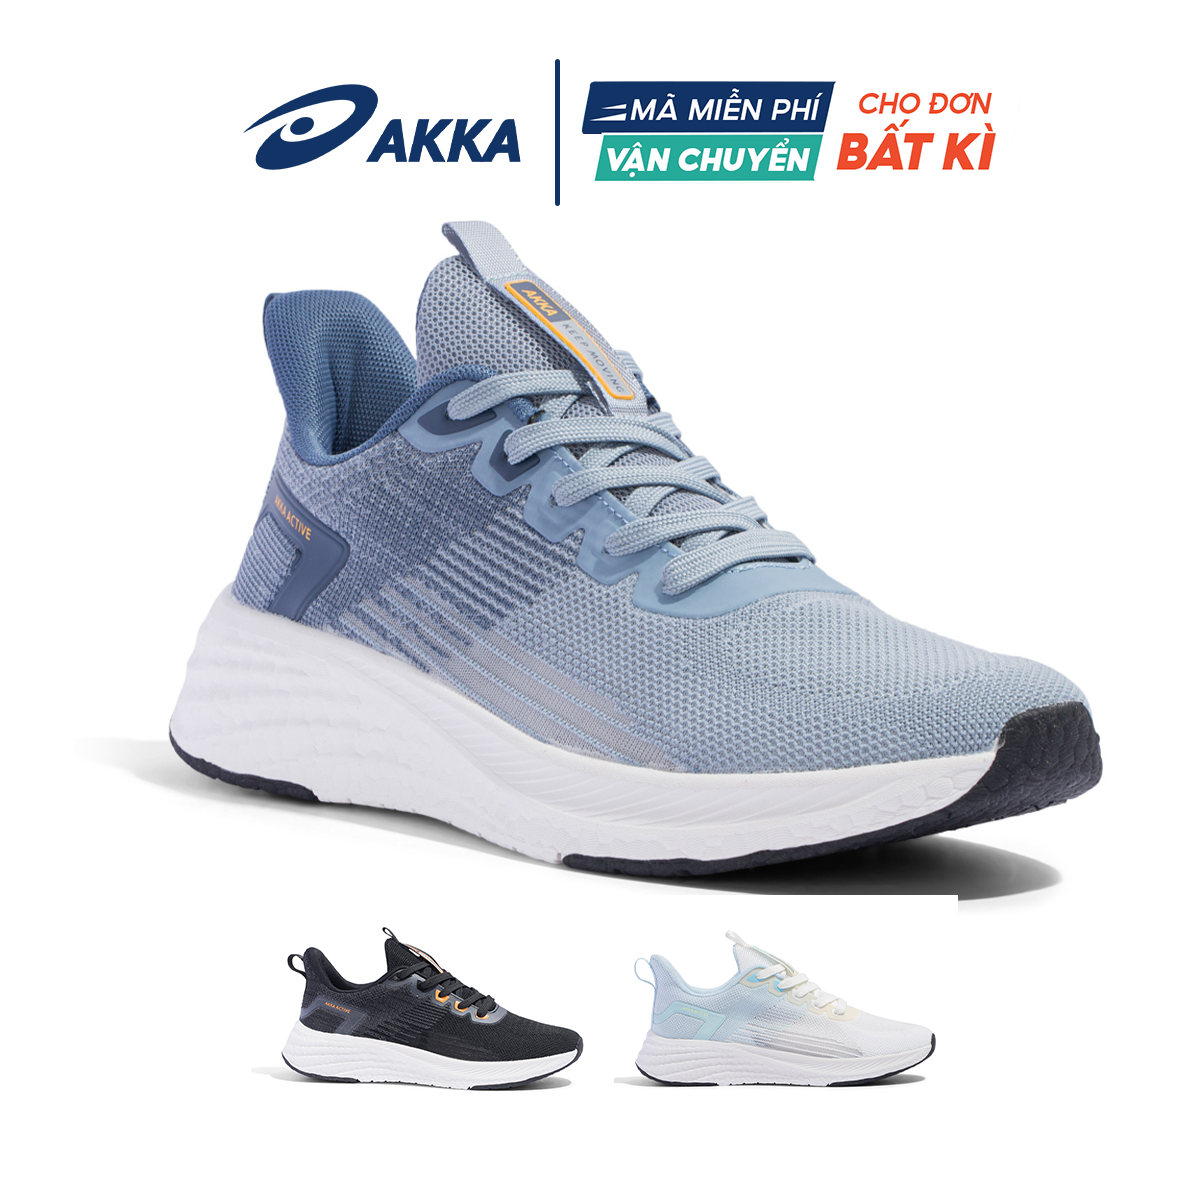 Giày thể thao chạy bộ chính hãng AKKA ACTIVE B2213